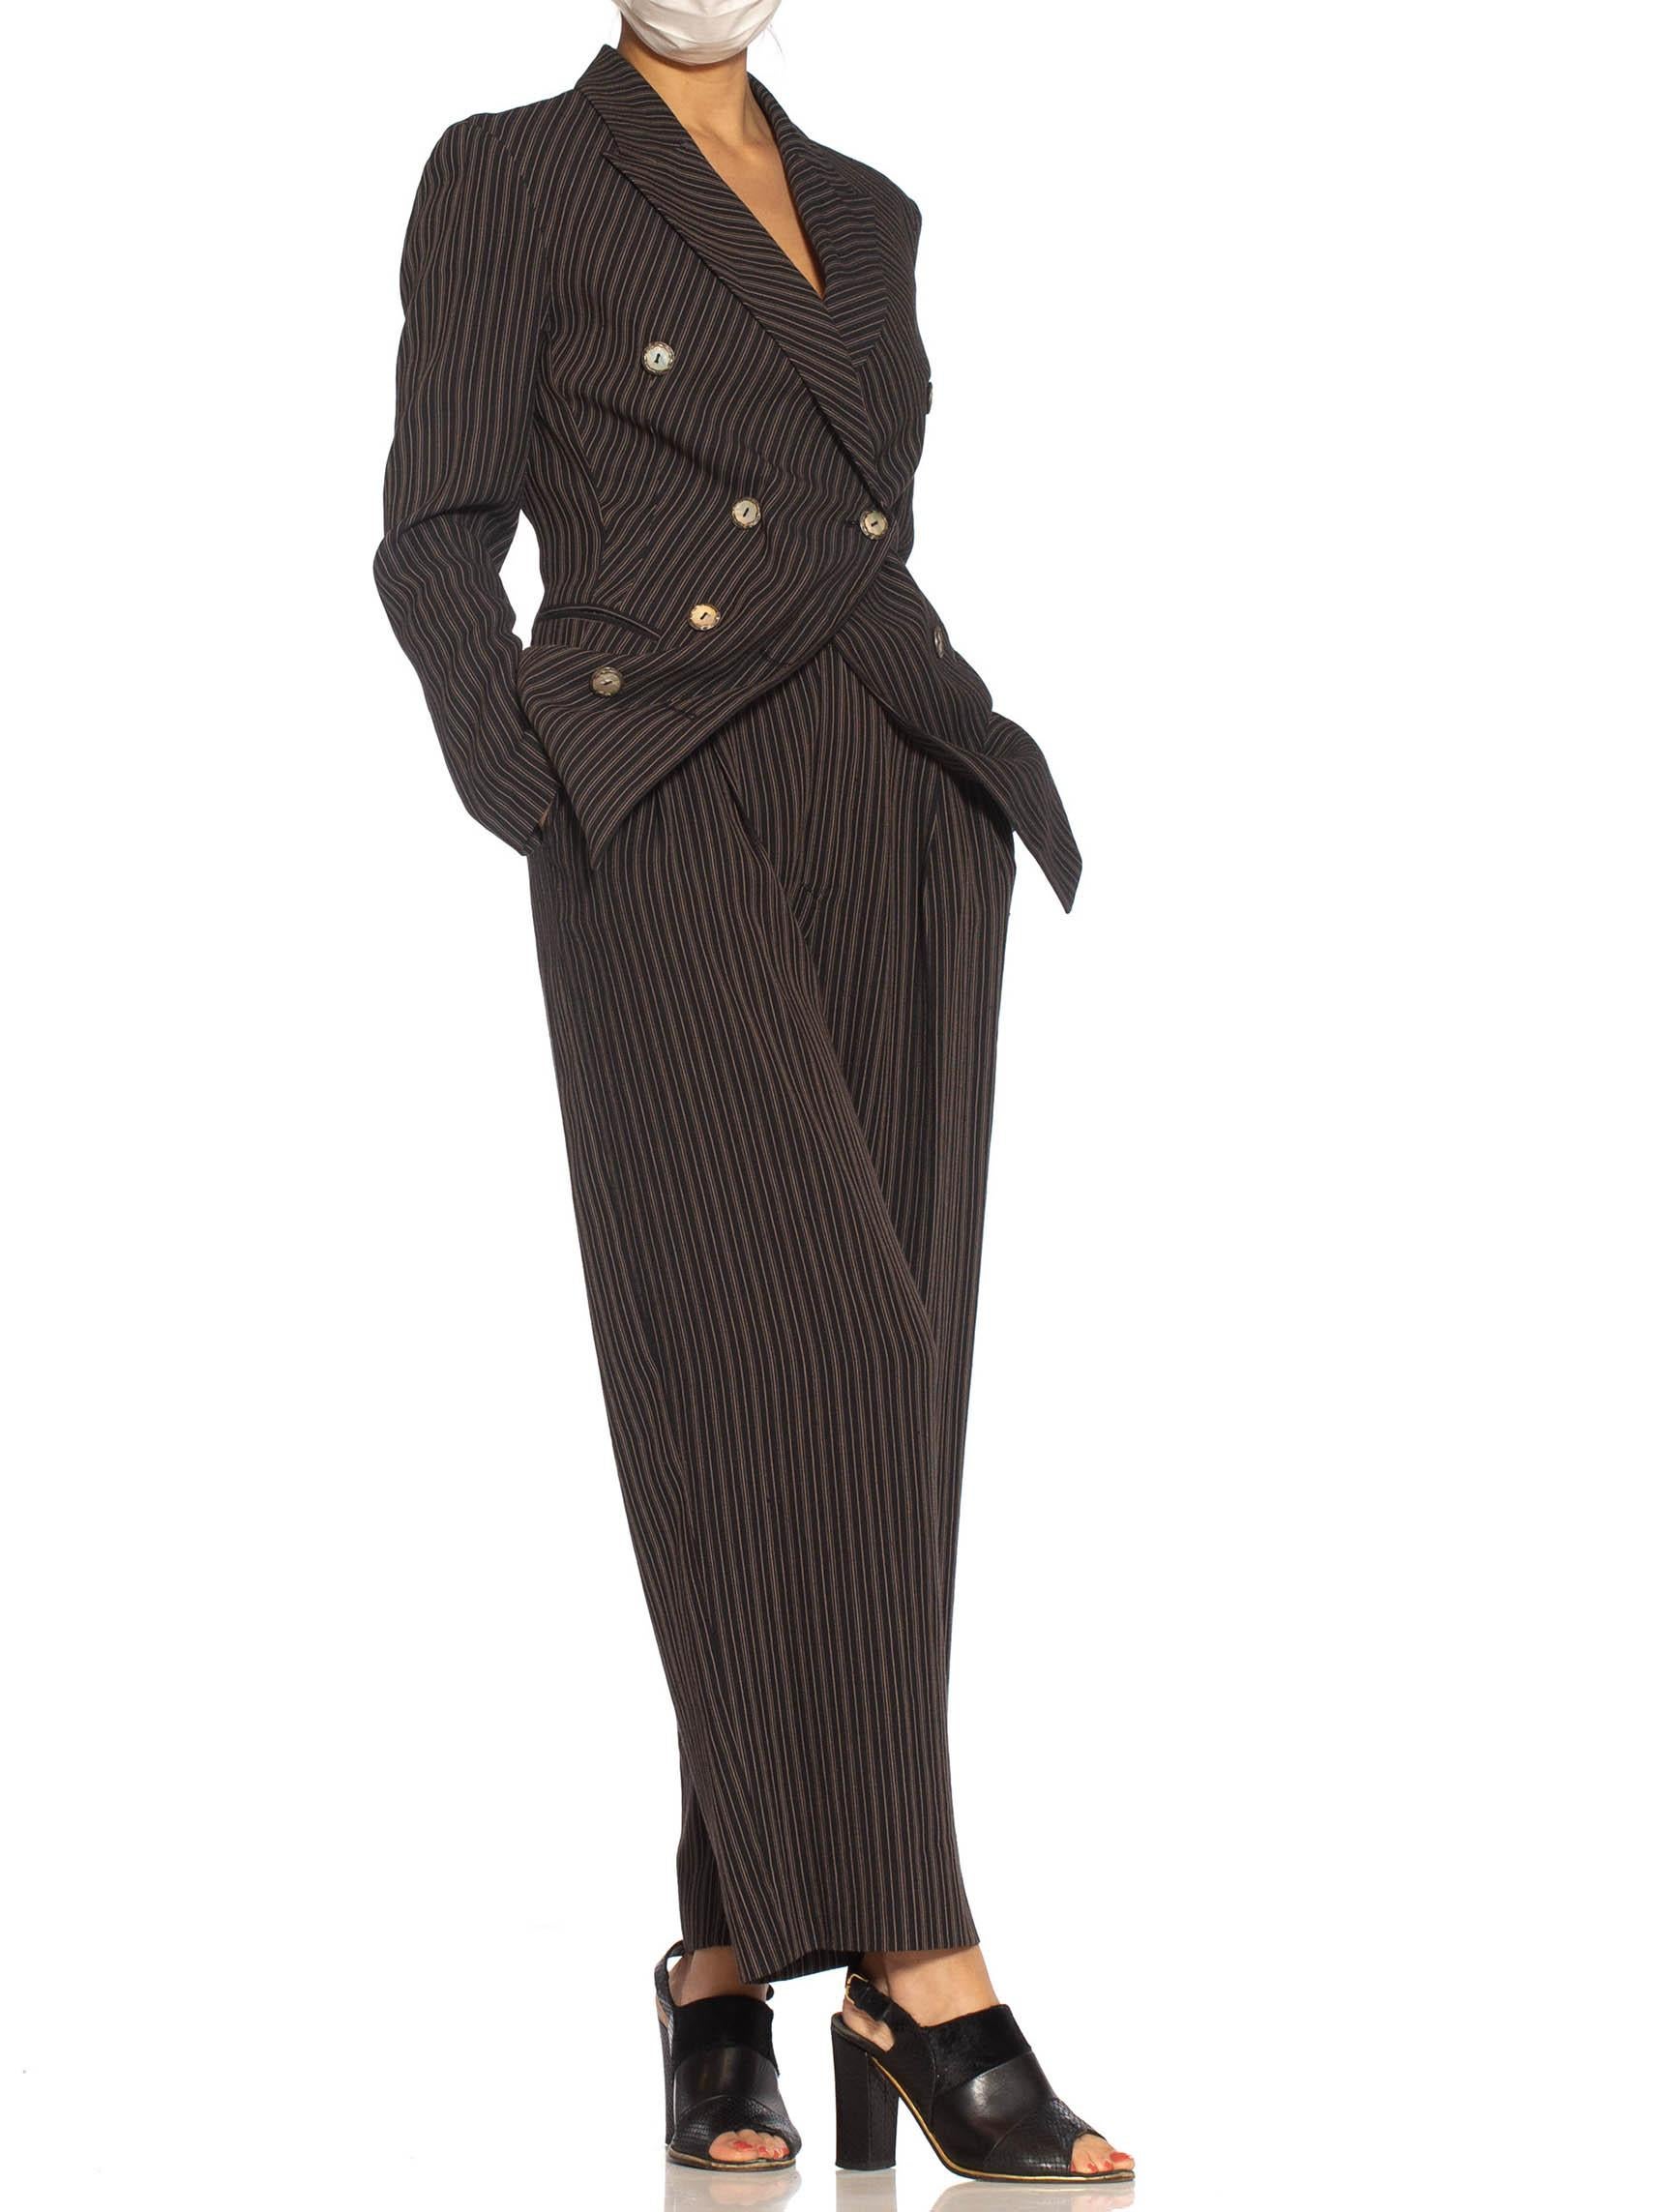 Women's 1990S RIFAT OZBEK Black & Beige Linen Blend Pinstripe Pant Suit